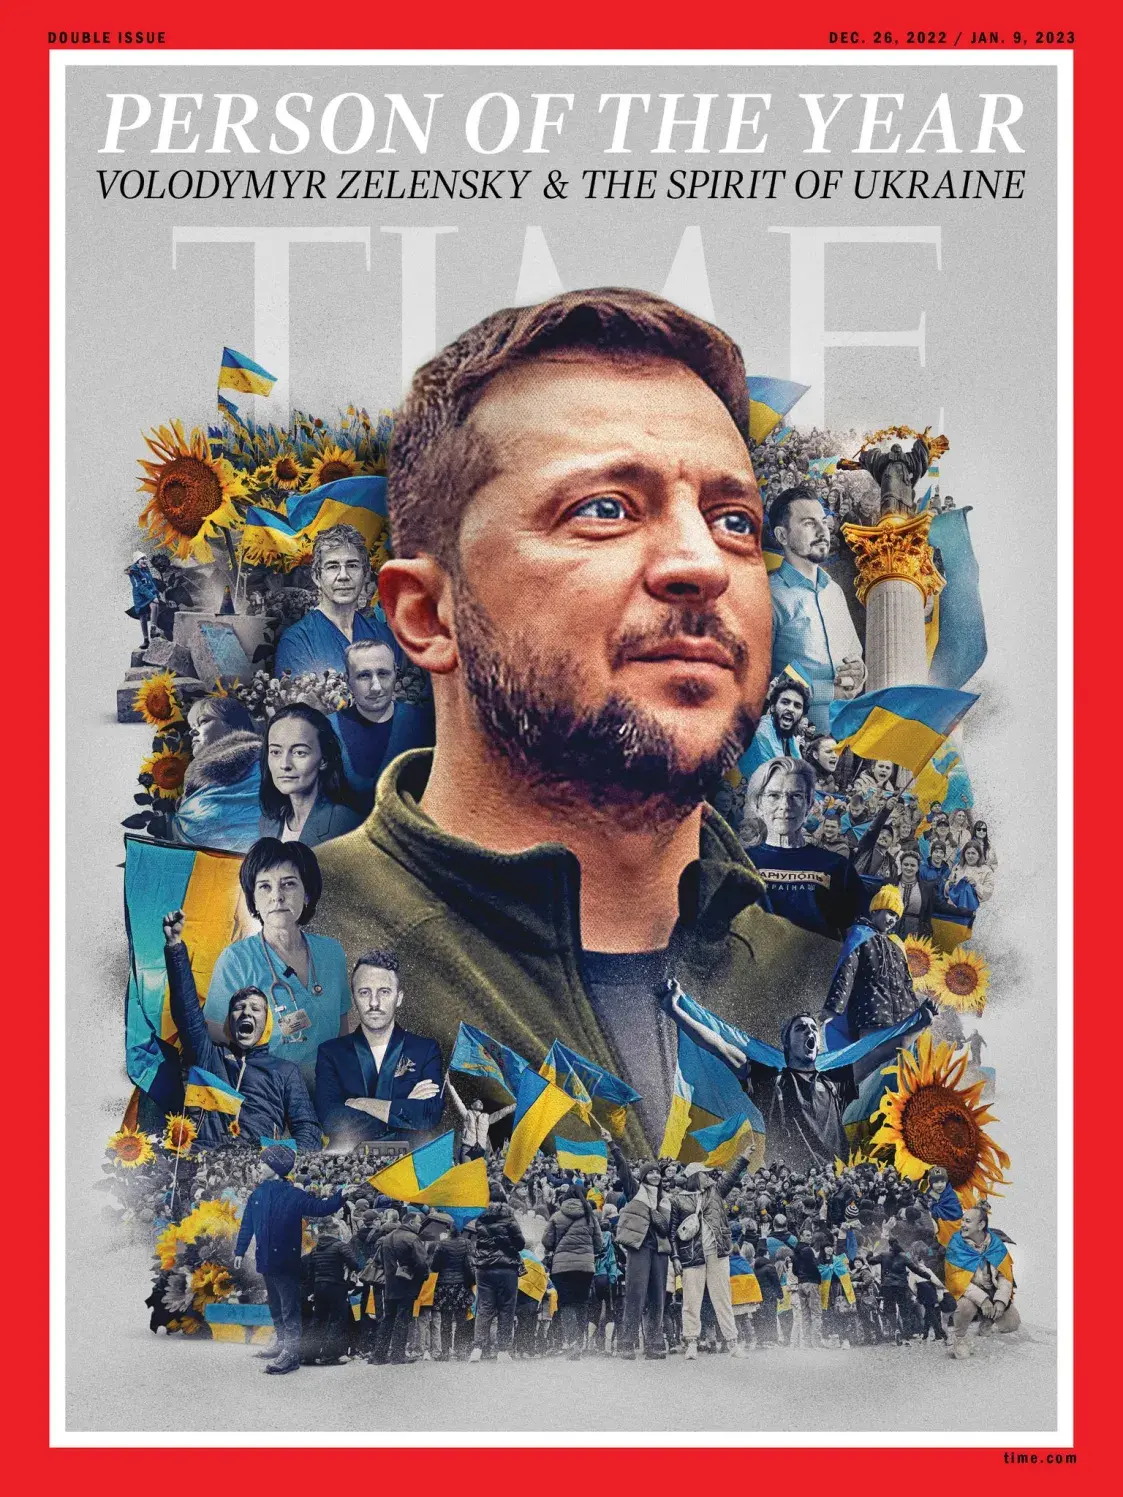 Time назваў "чалавекам года" Уладзіміра Зяленскага і "дух Украіны" 